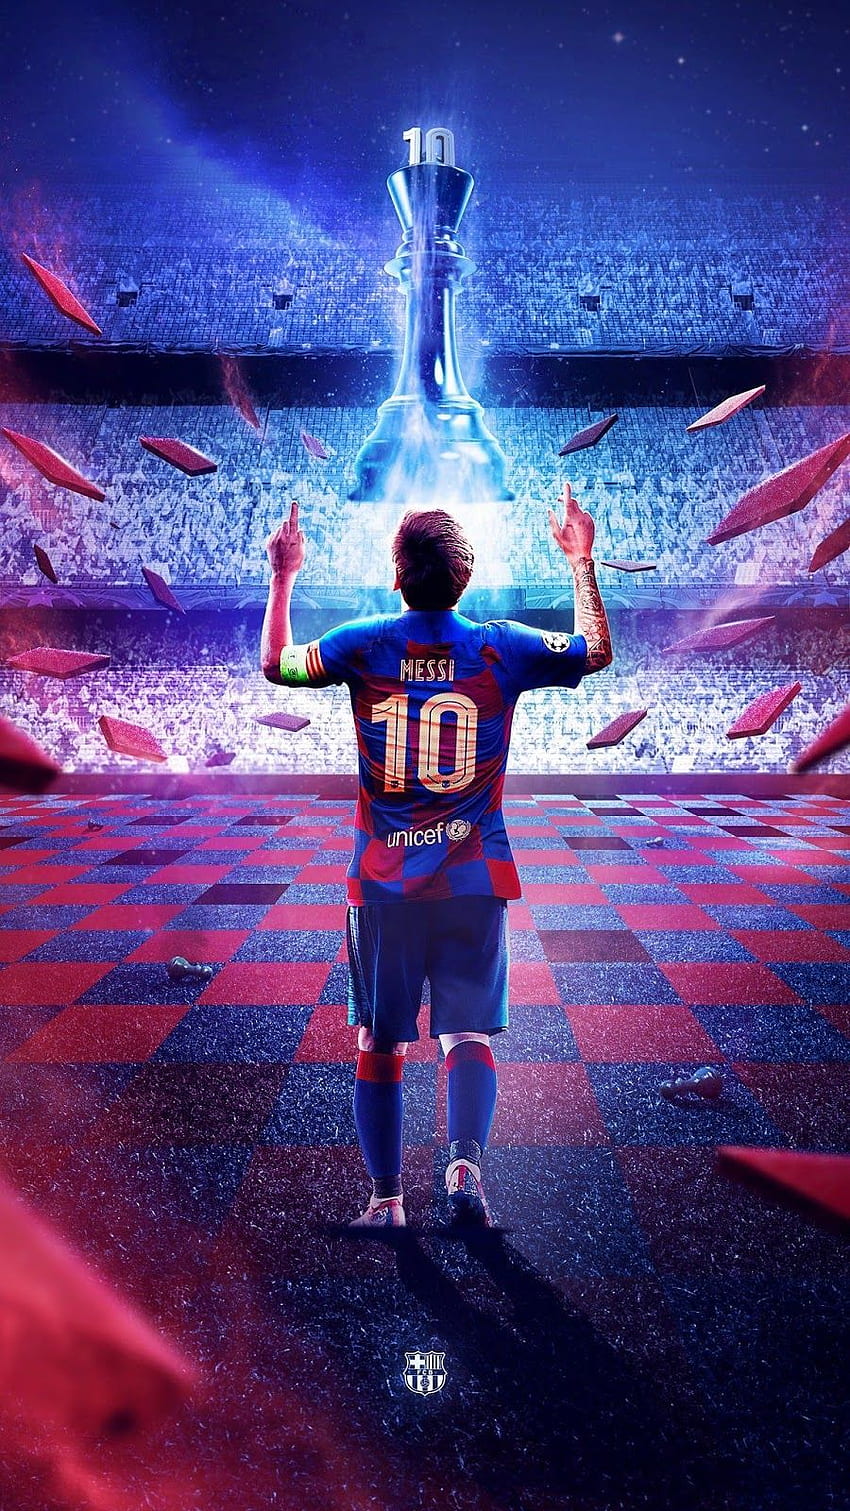 Nếu bạn muốn cập nhật ngay hình nền của Messi cho điện thoại của mình, Messi 2020 HD phone wallpaper sẽ là sự lựa chọn hoàn hảo cho bạn. Trông rất chất lượng và rõ nét, hình ảnh sẽ đưa bạn đến gần hơn với thần tượng bóng đá của mình.